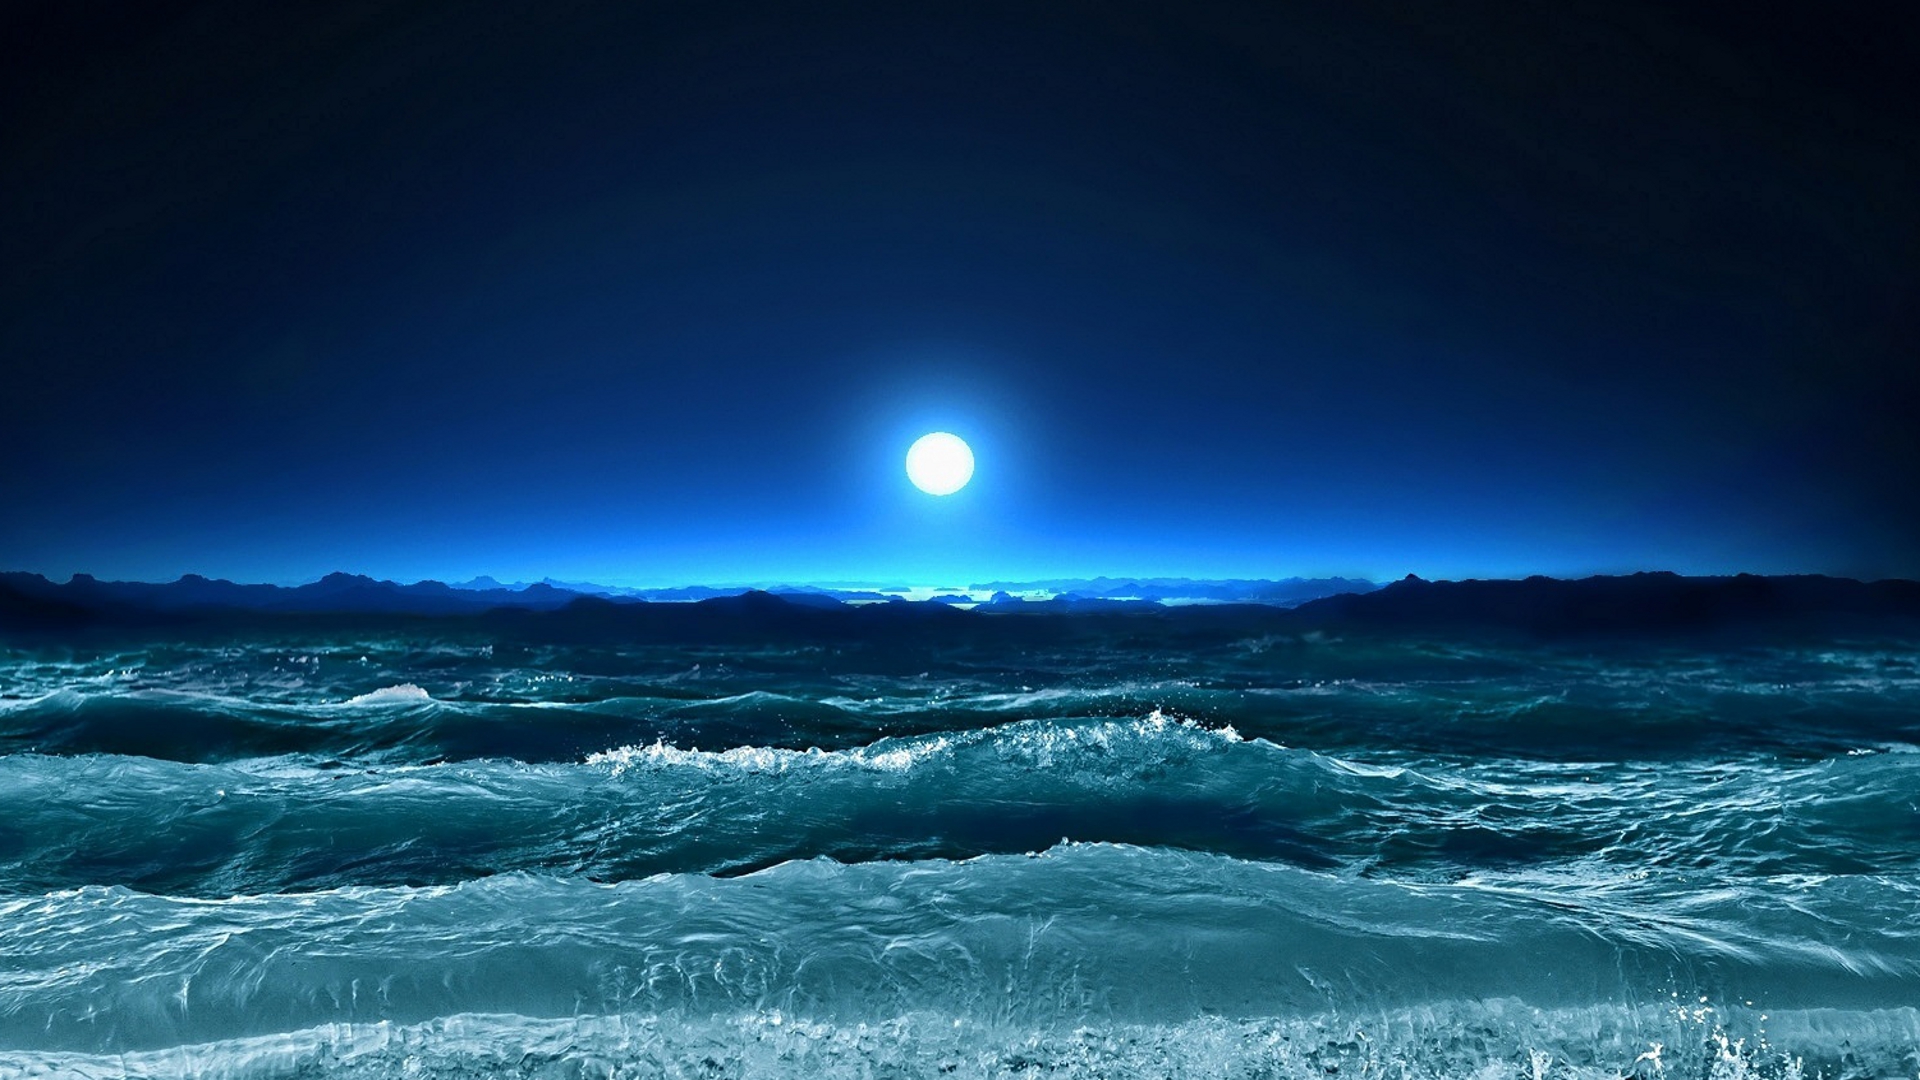 Ocean Waves Under Moonlight desktop wallpaper | WallpaperPixel